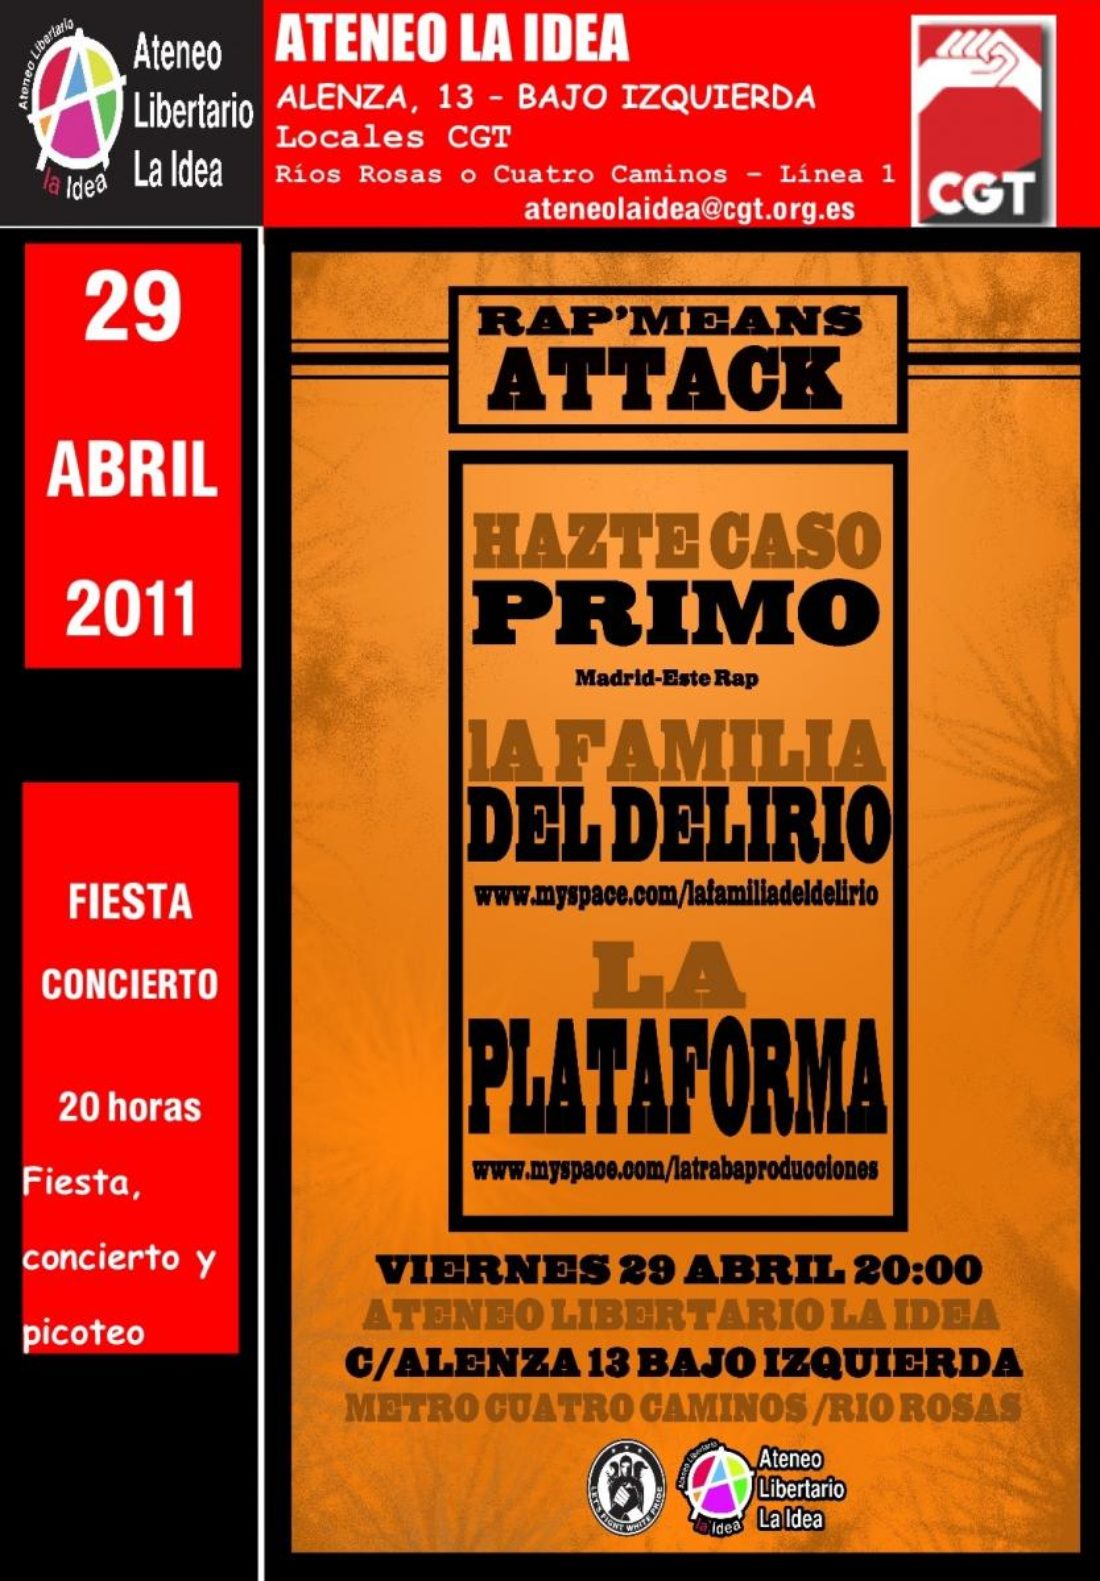 Fiesta-concierto en calle Alenza (Ateneo La Idea)